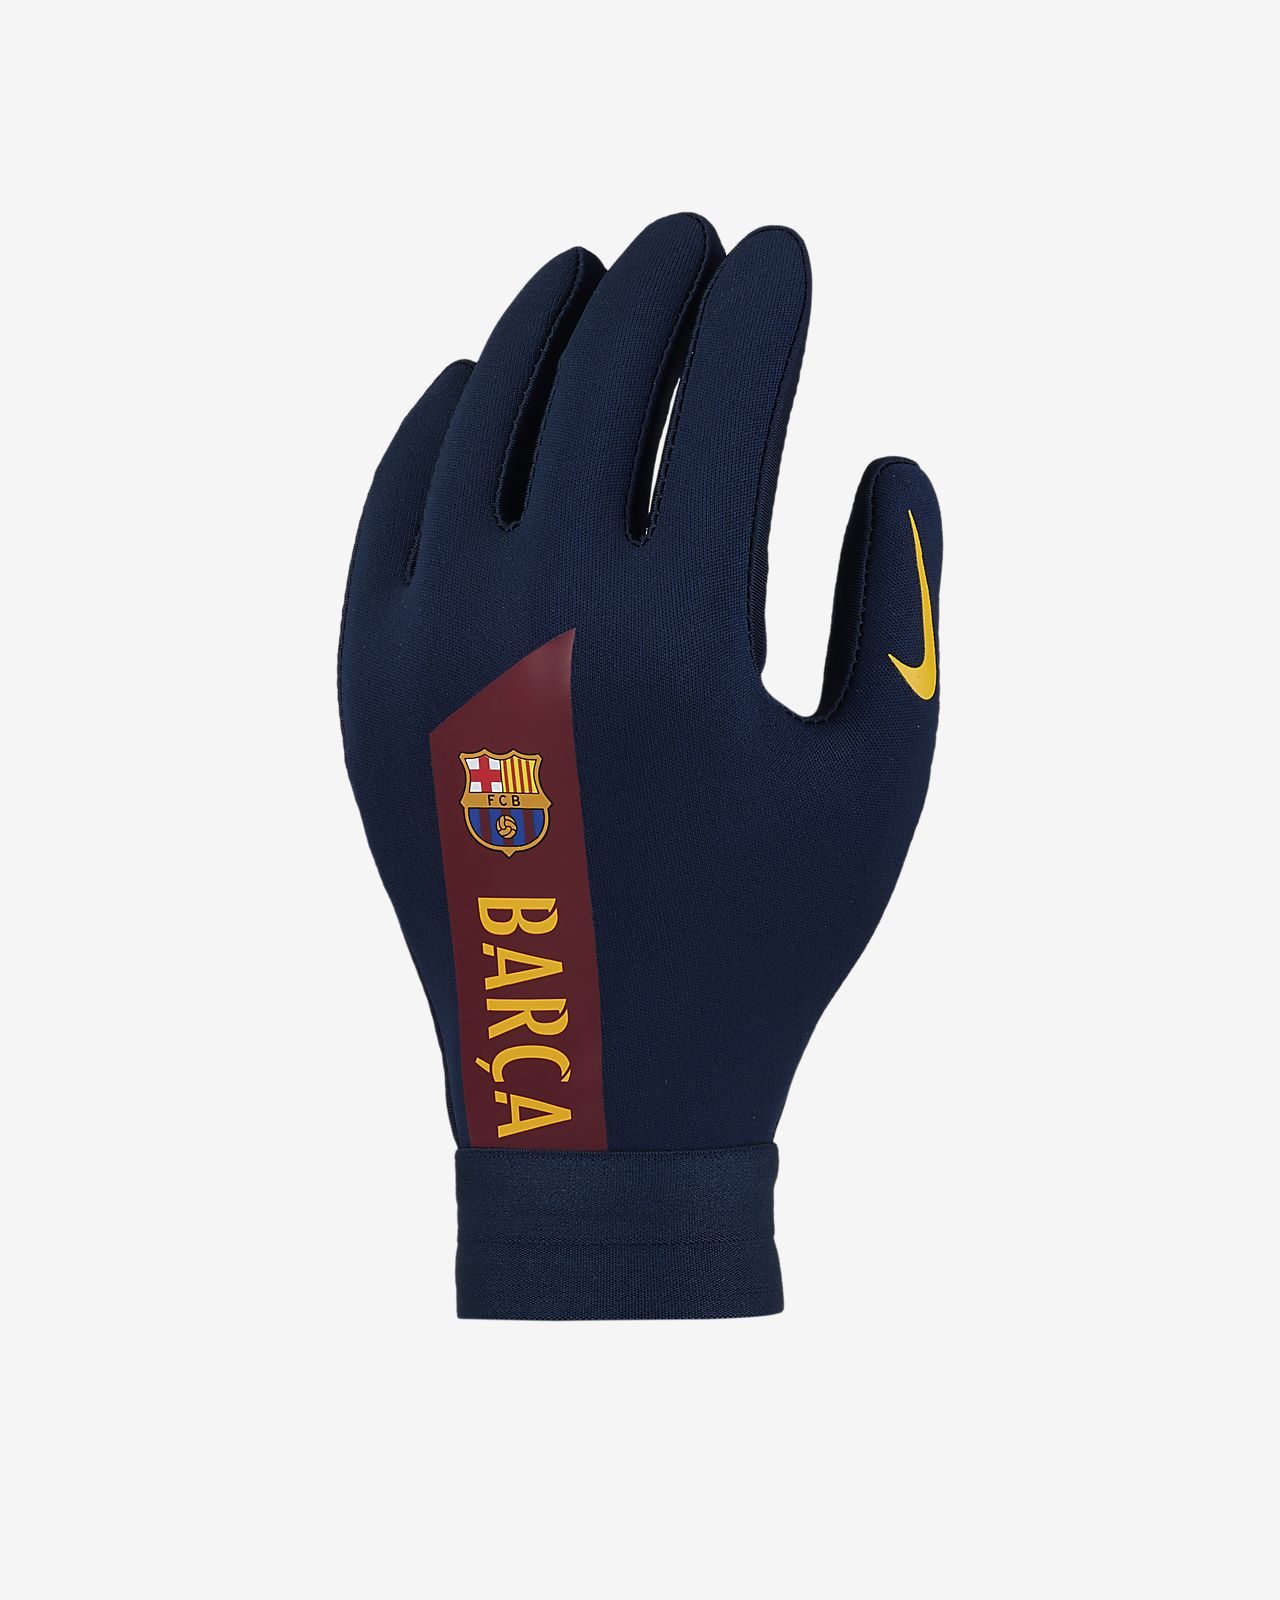 pee wee football gloves